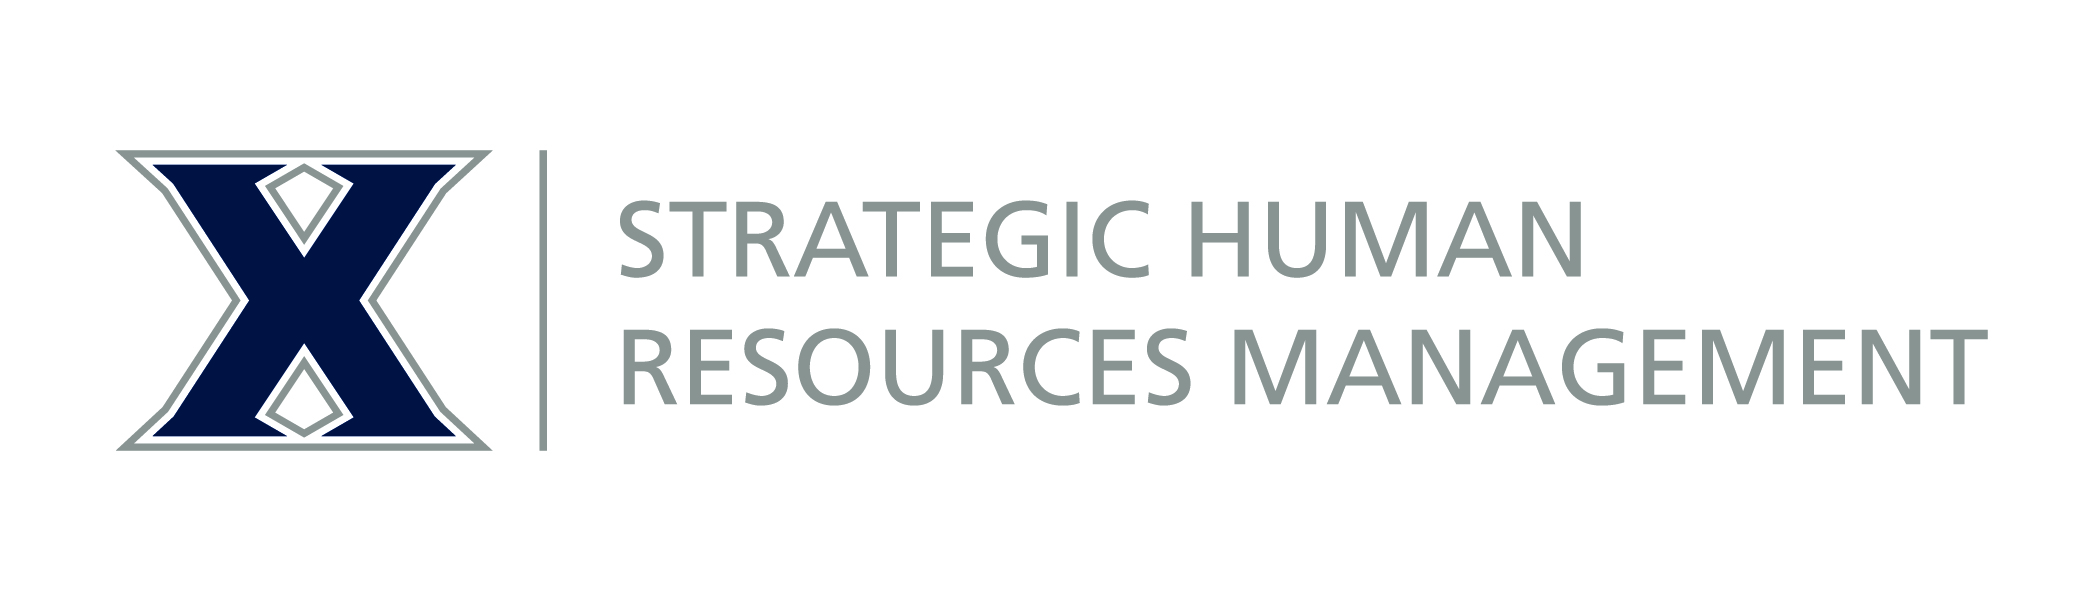 Xavier Strategic Human Resources Management logo